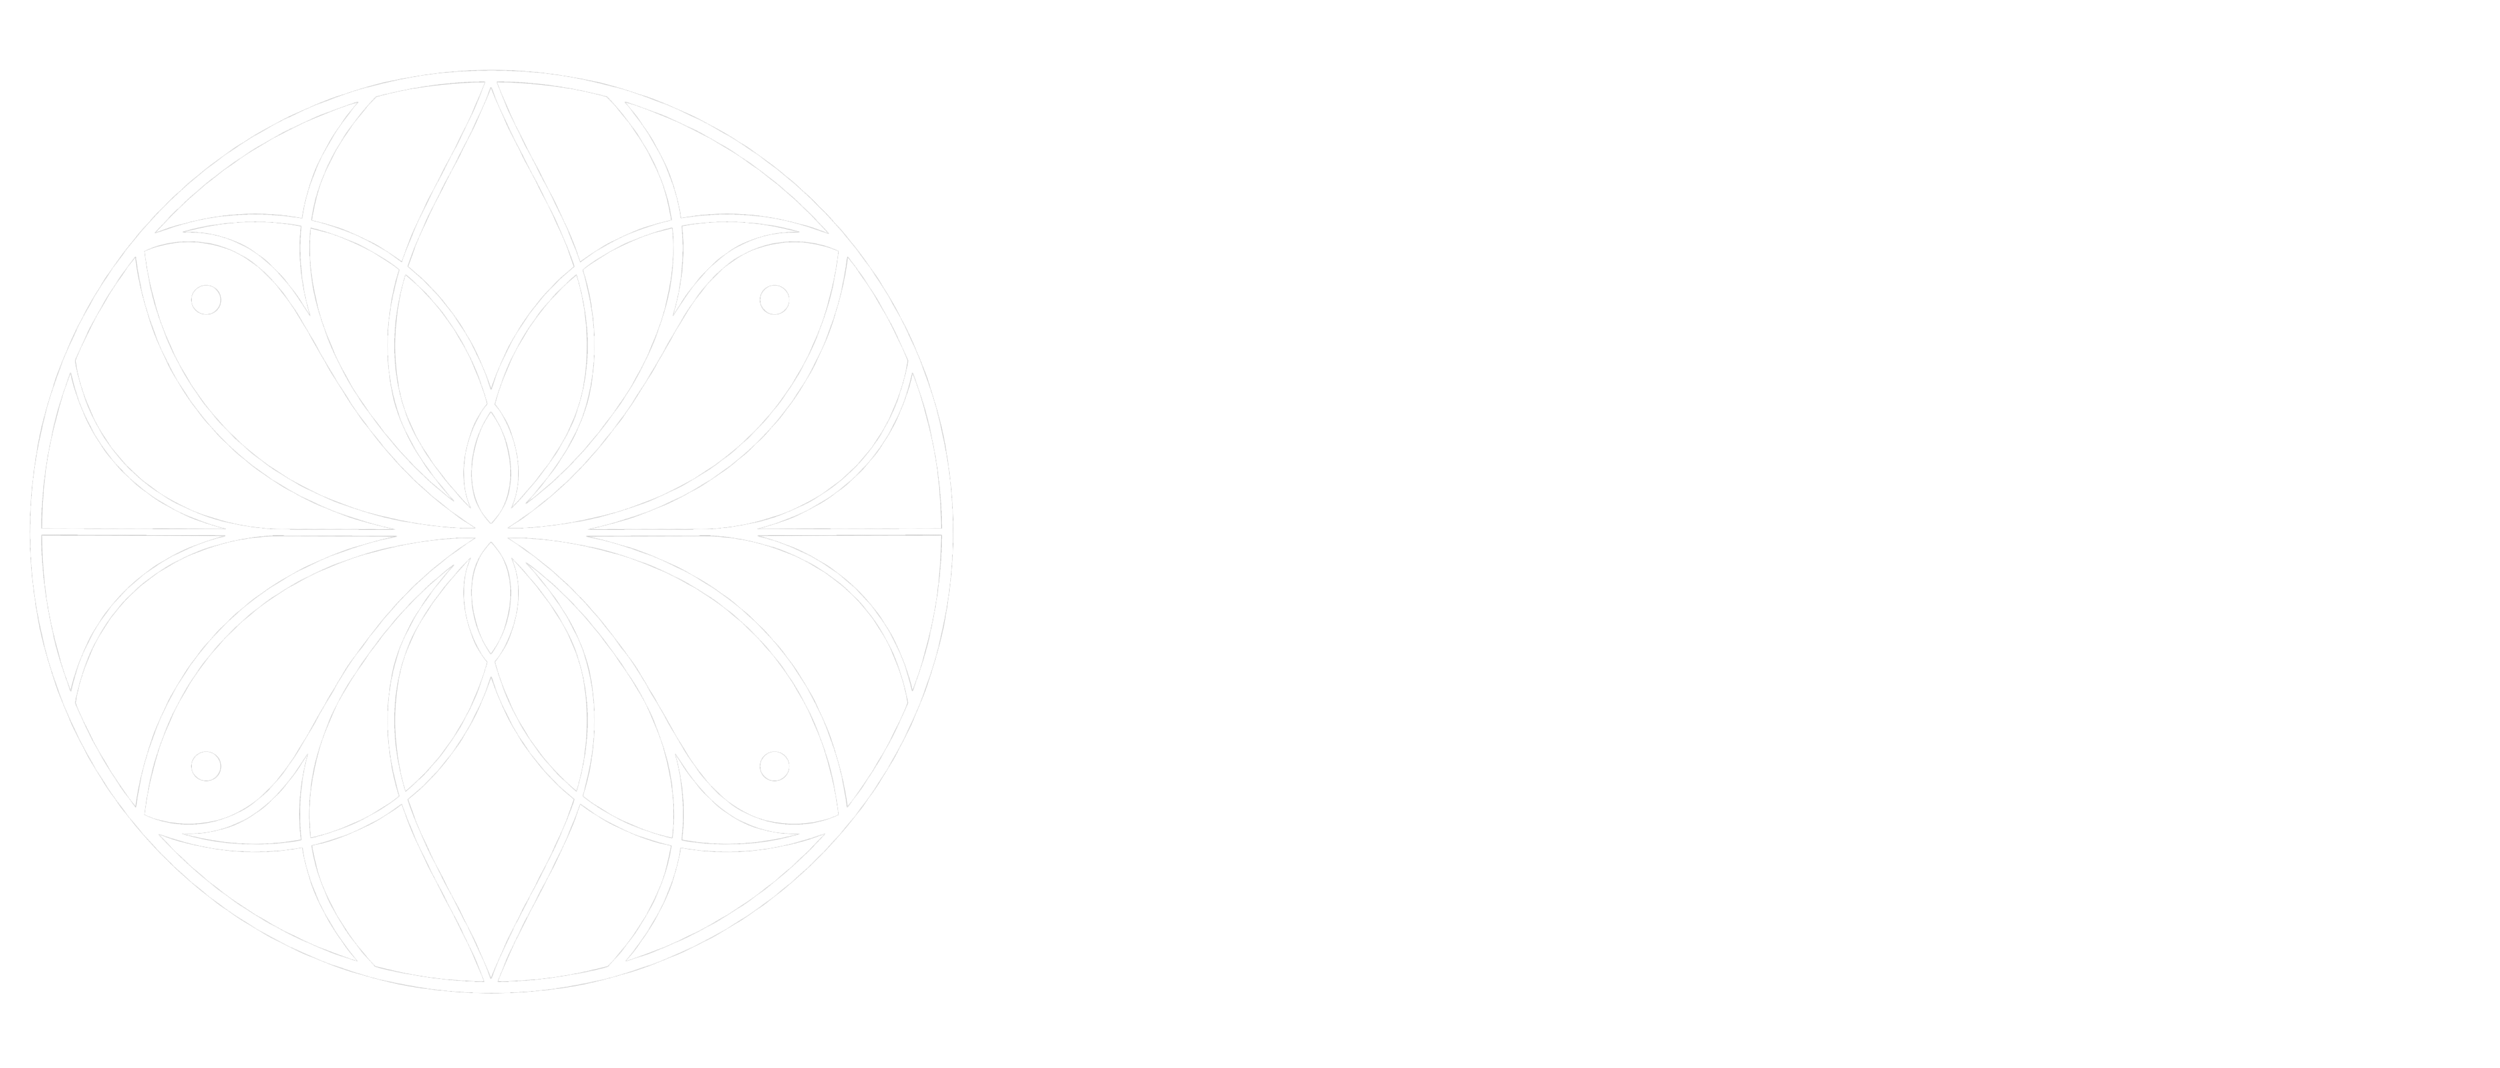 Michelle Montejano, LMFT